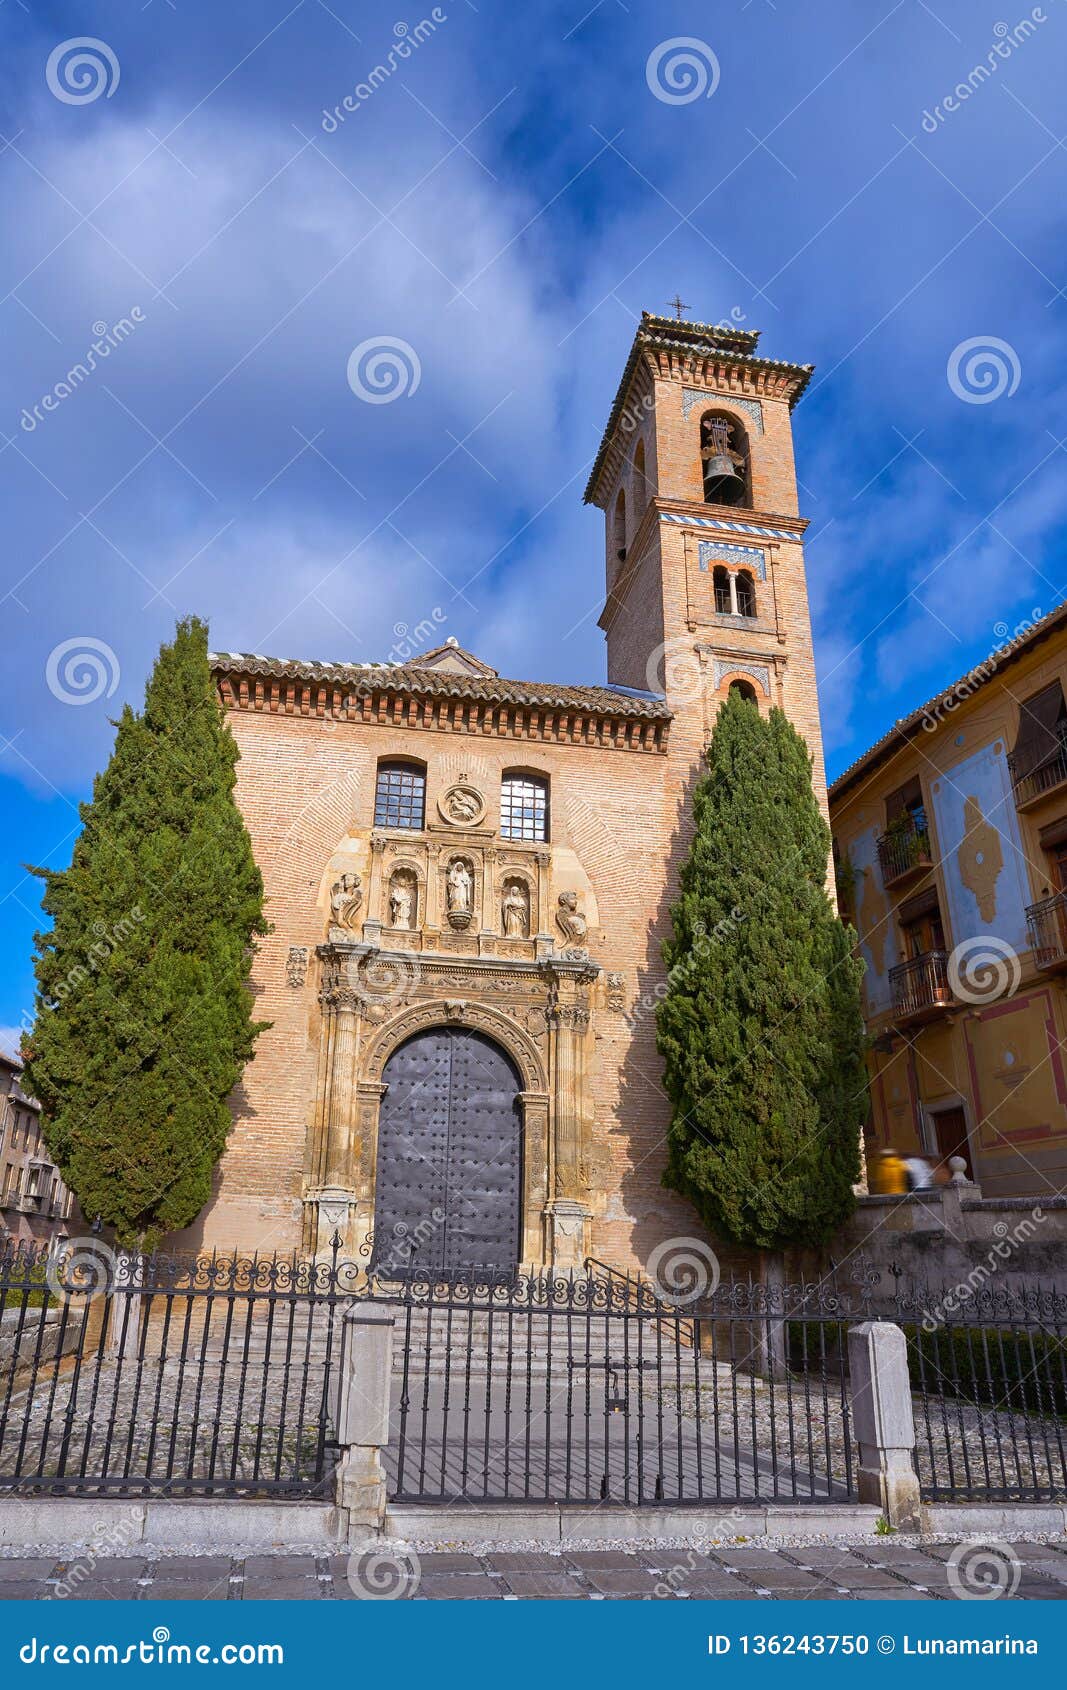 saint gil and ana church in granada spain